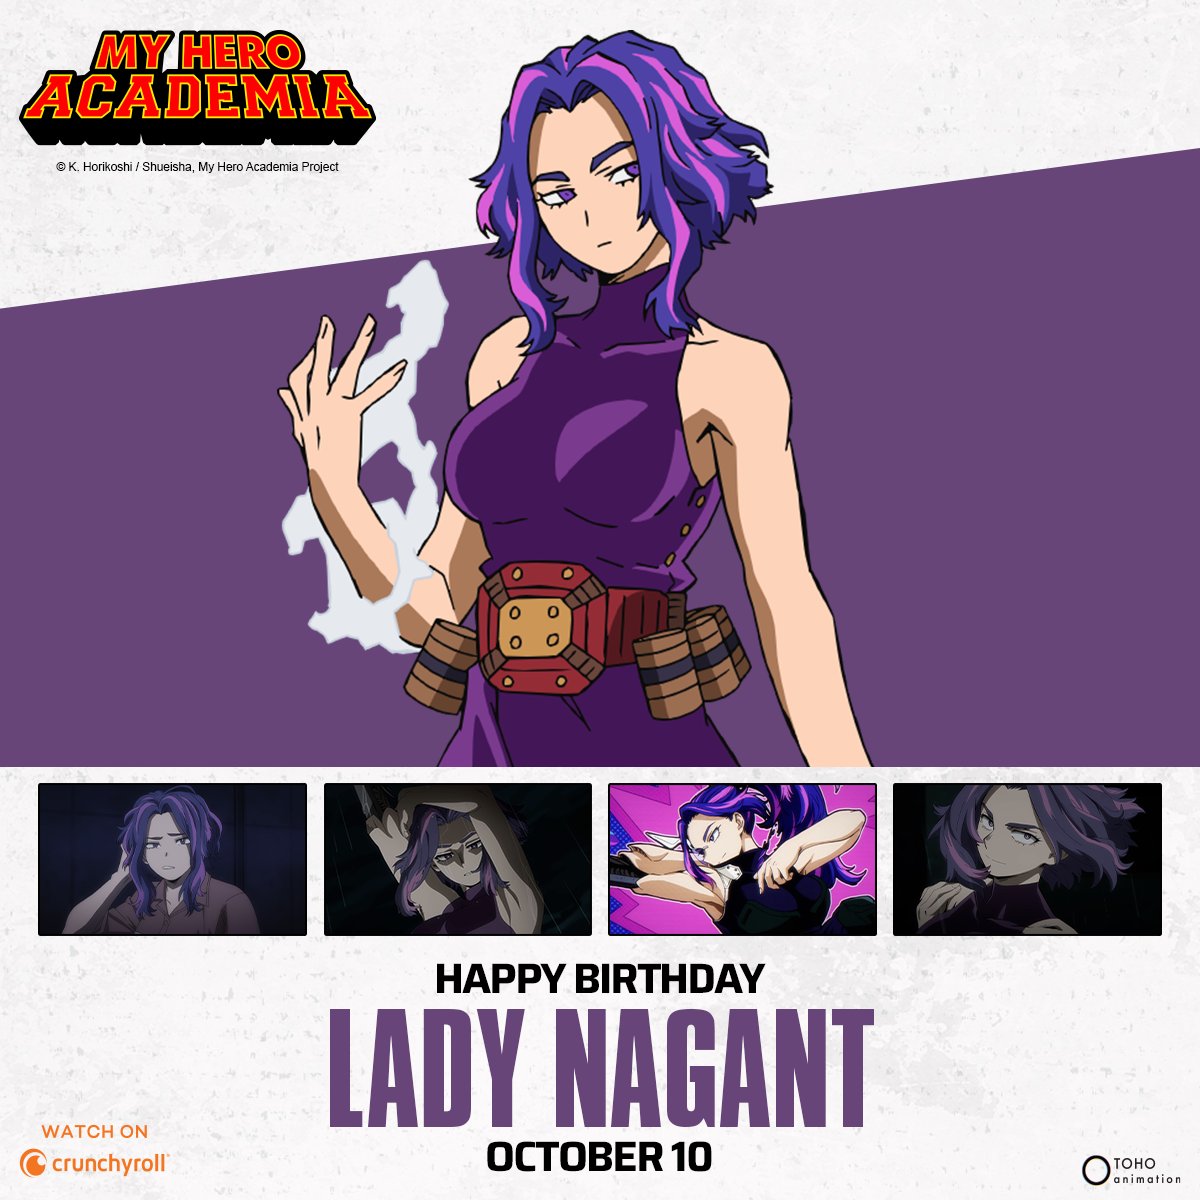 Happy birthday, Lady Nagant! 💜